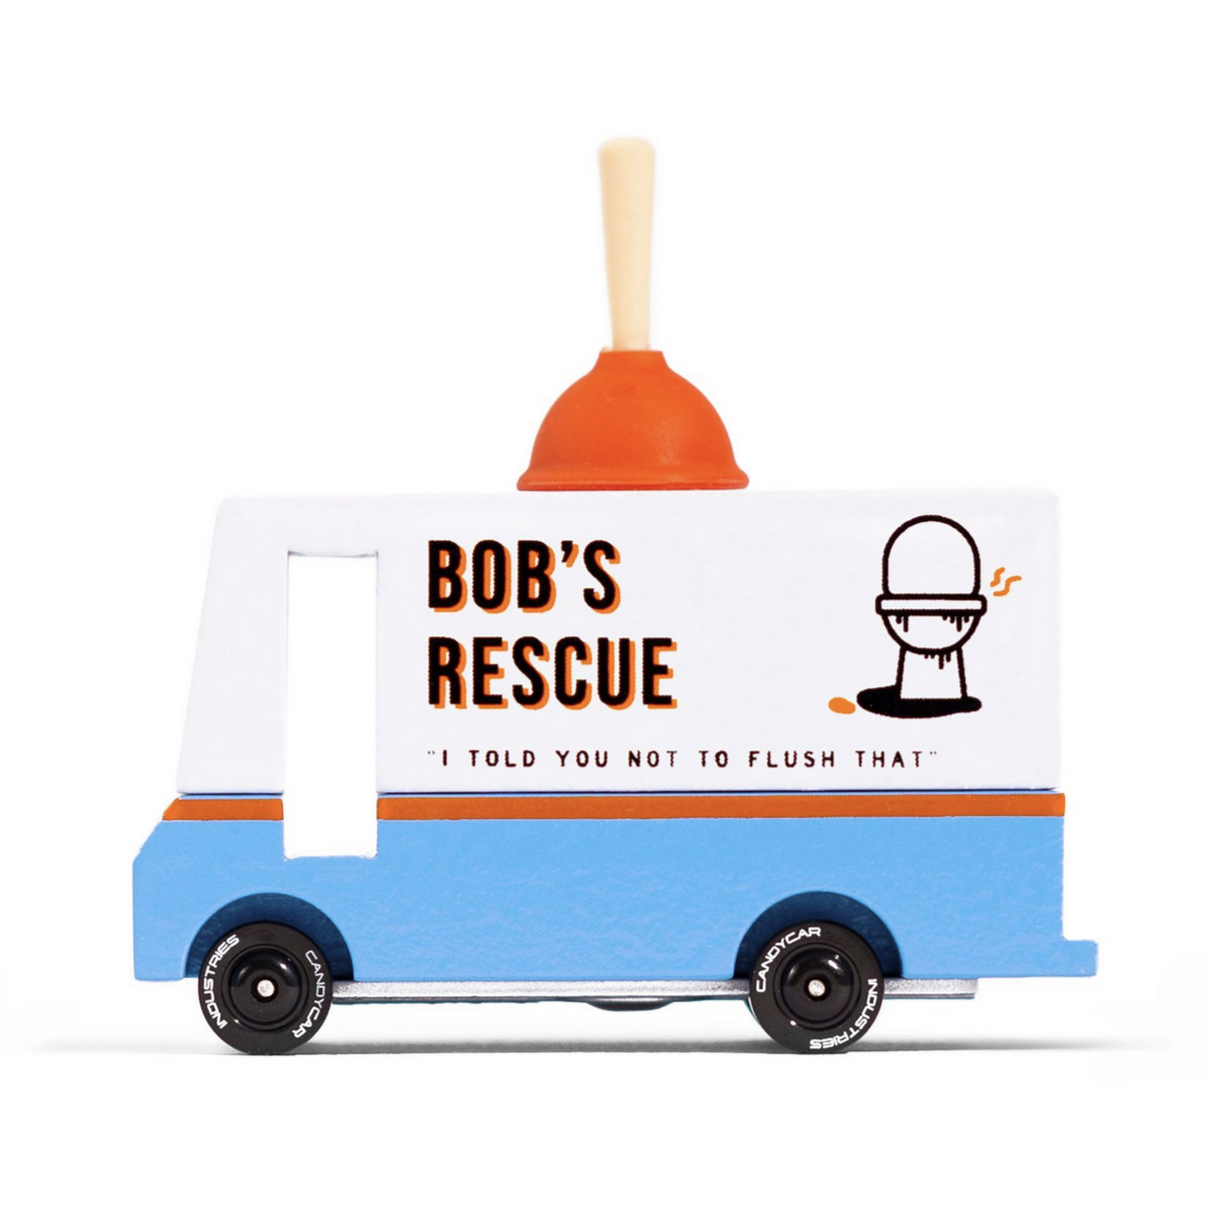 Bob's Plumbing Van